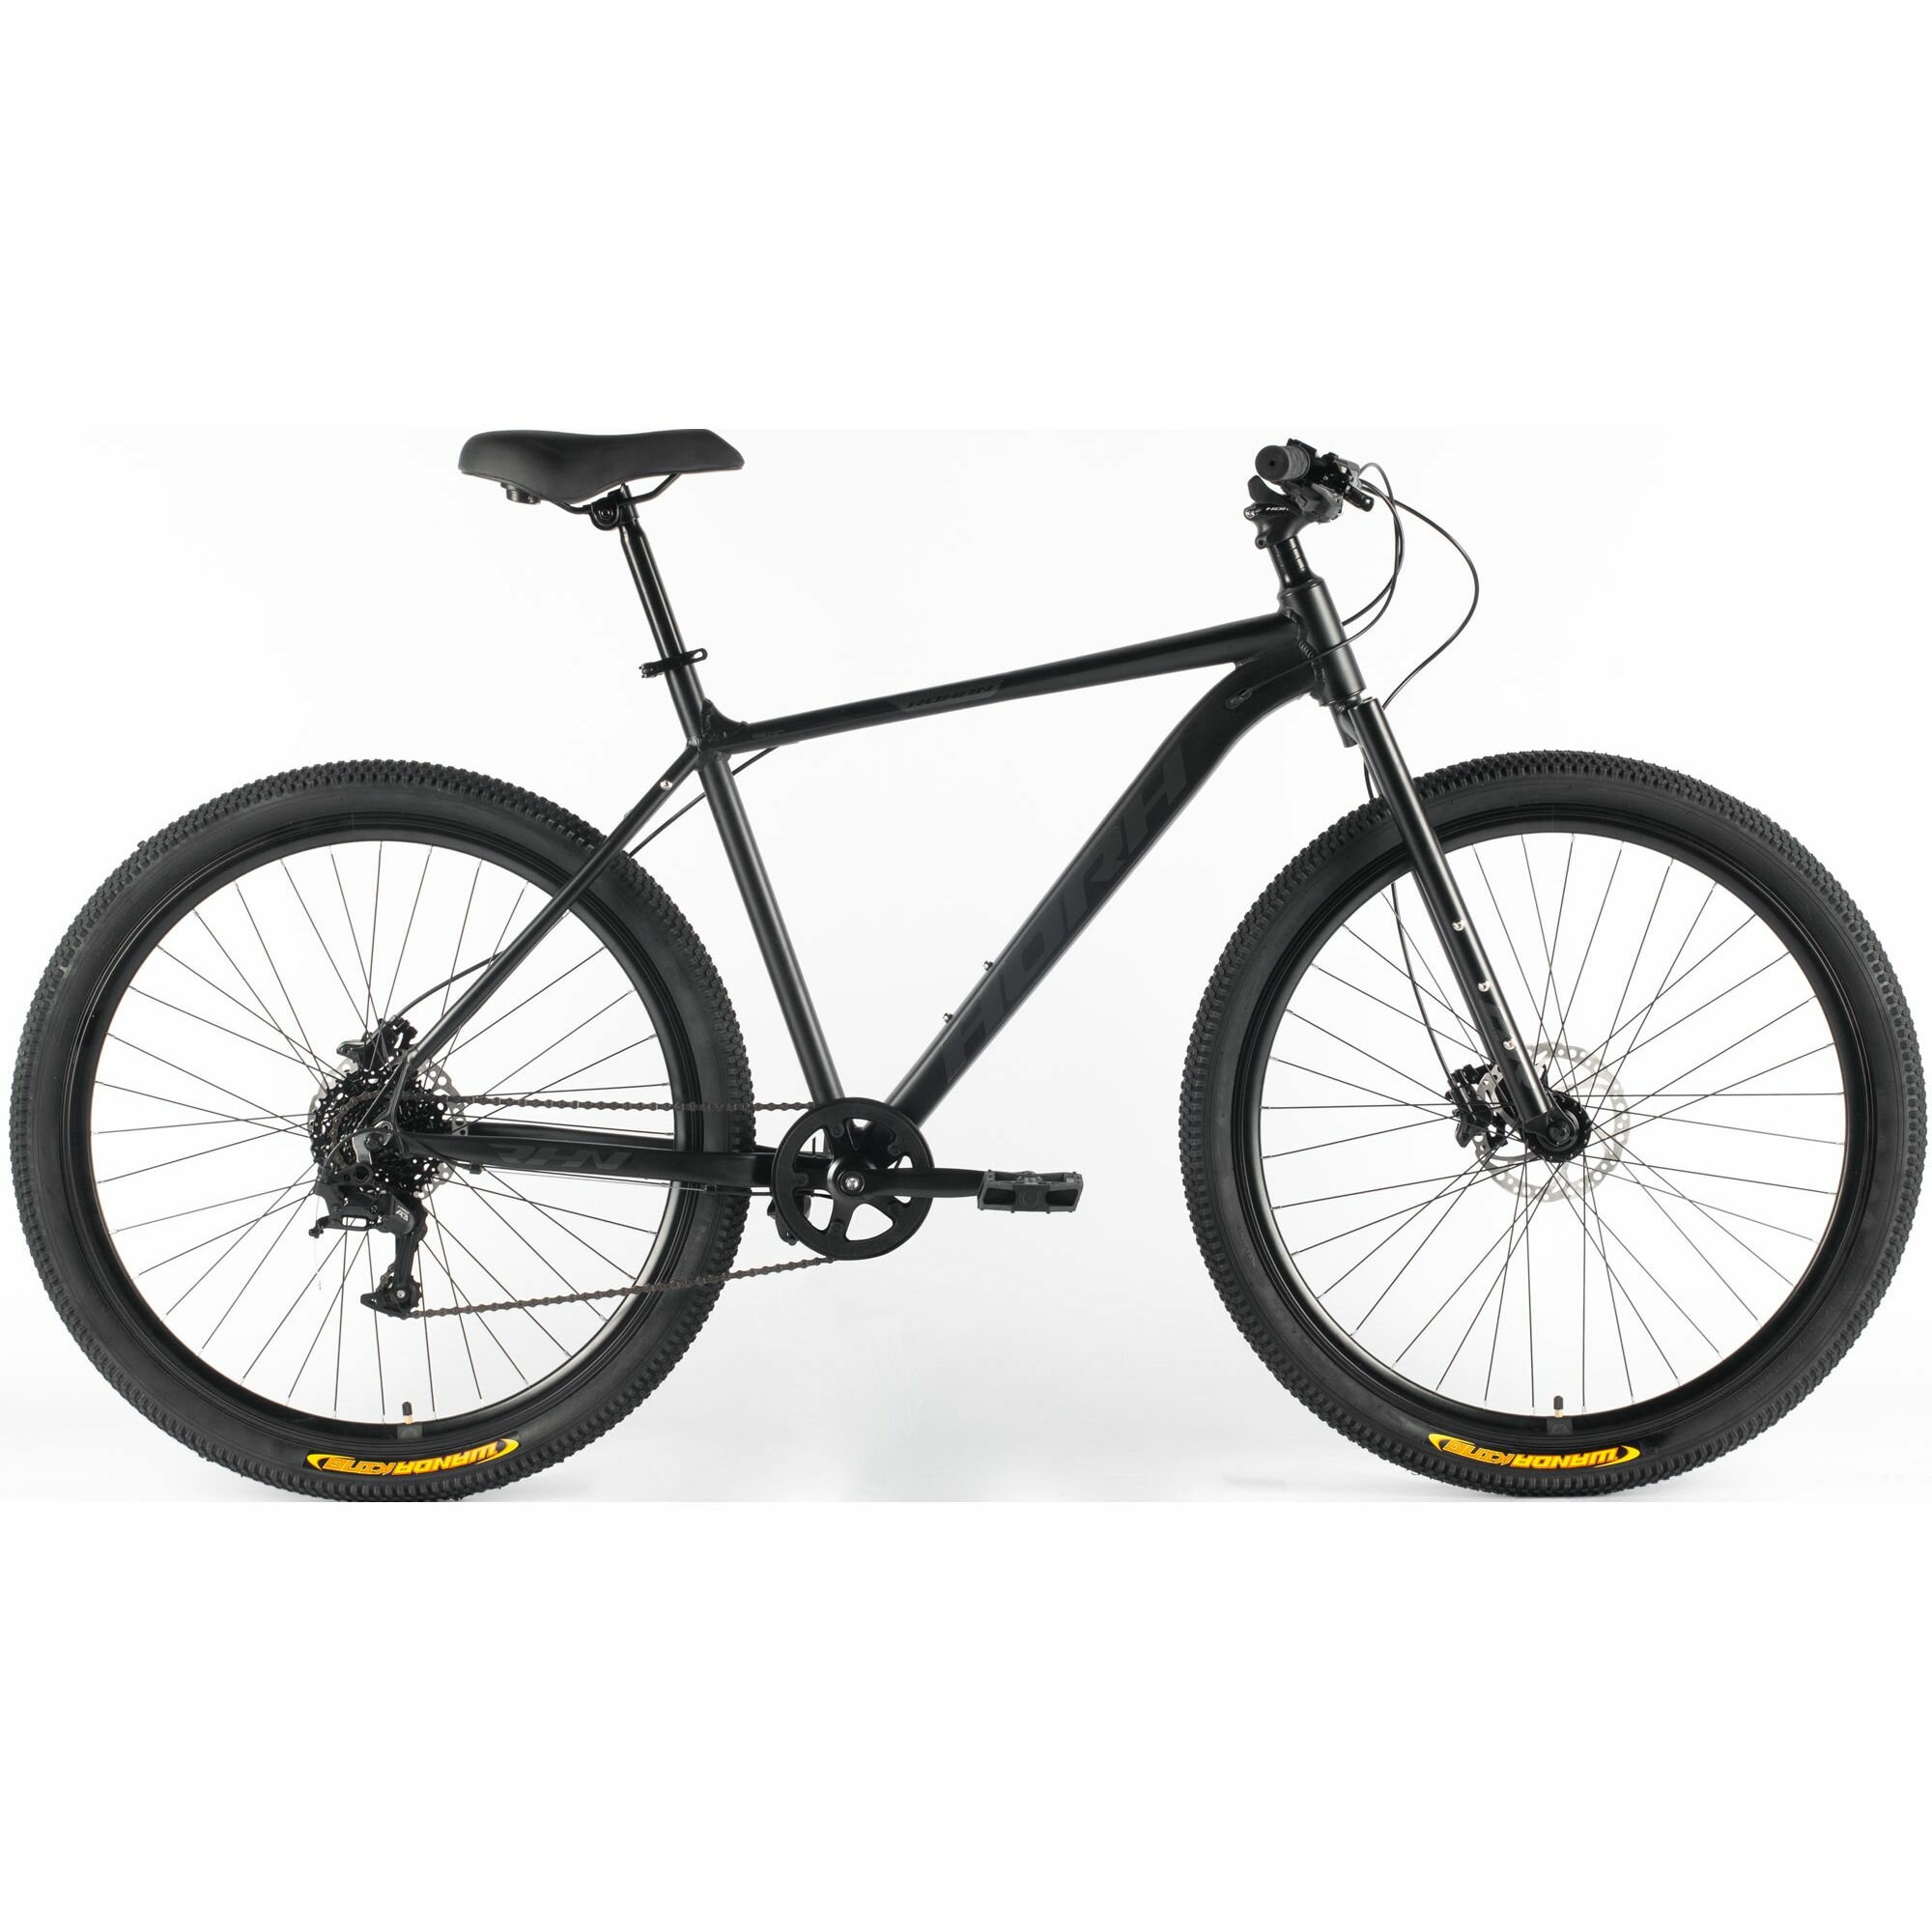 Велосипед горный HORH ROHAN RHD 9.1R 29" (2024), ригид, взрослый, мужской, алюминиевая рама, 8 скоростей, дисковые гидравлические тормоза, цвет Black-Grey, черный/серый цвет, размер рамы 21", для роста 185-195 см